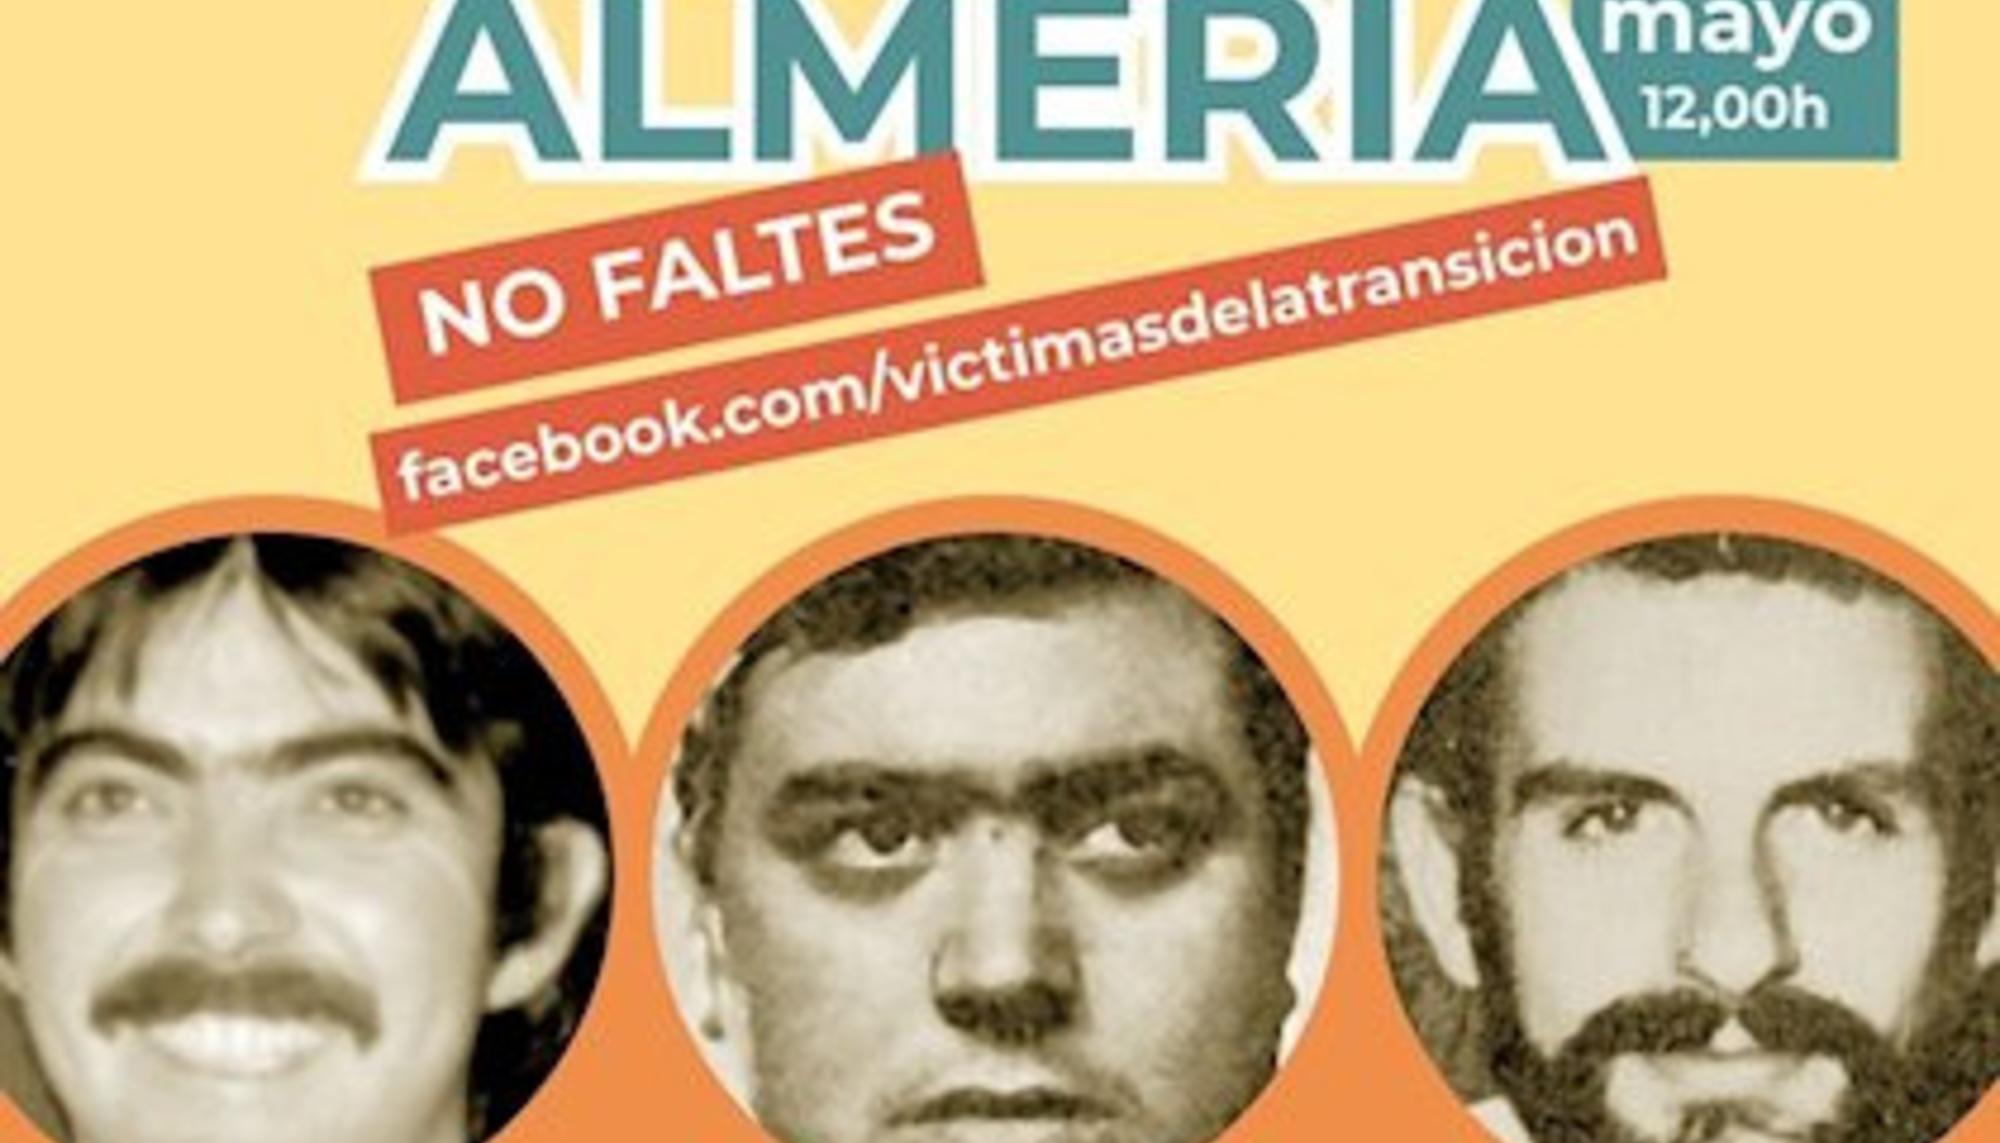 Detalle del cartel en homenaje 2020 a los asesinados en el Caso Almería